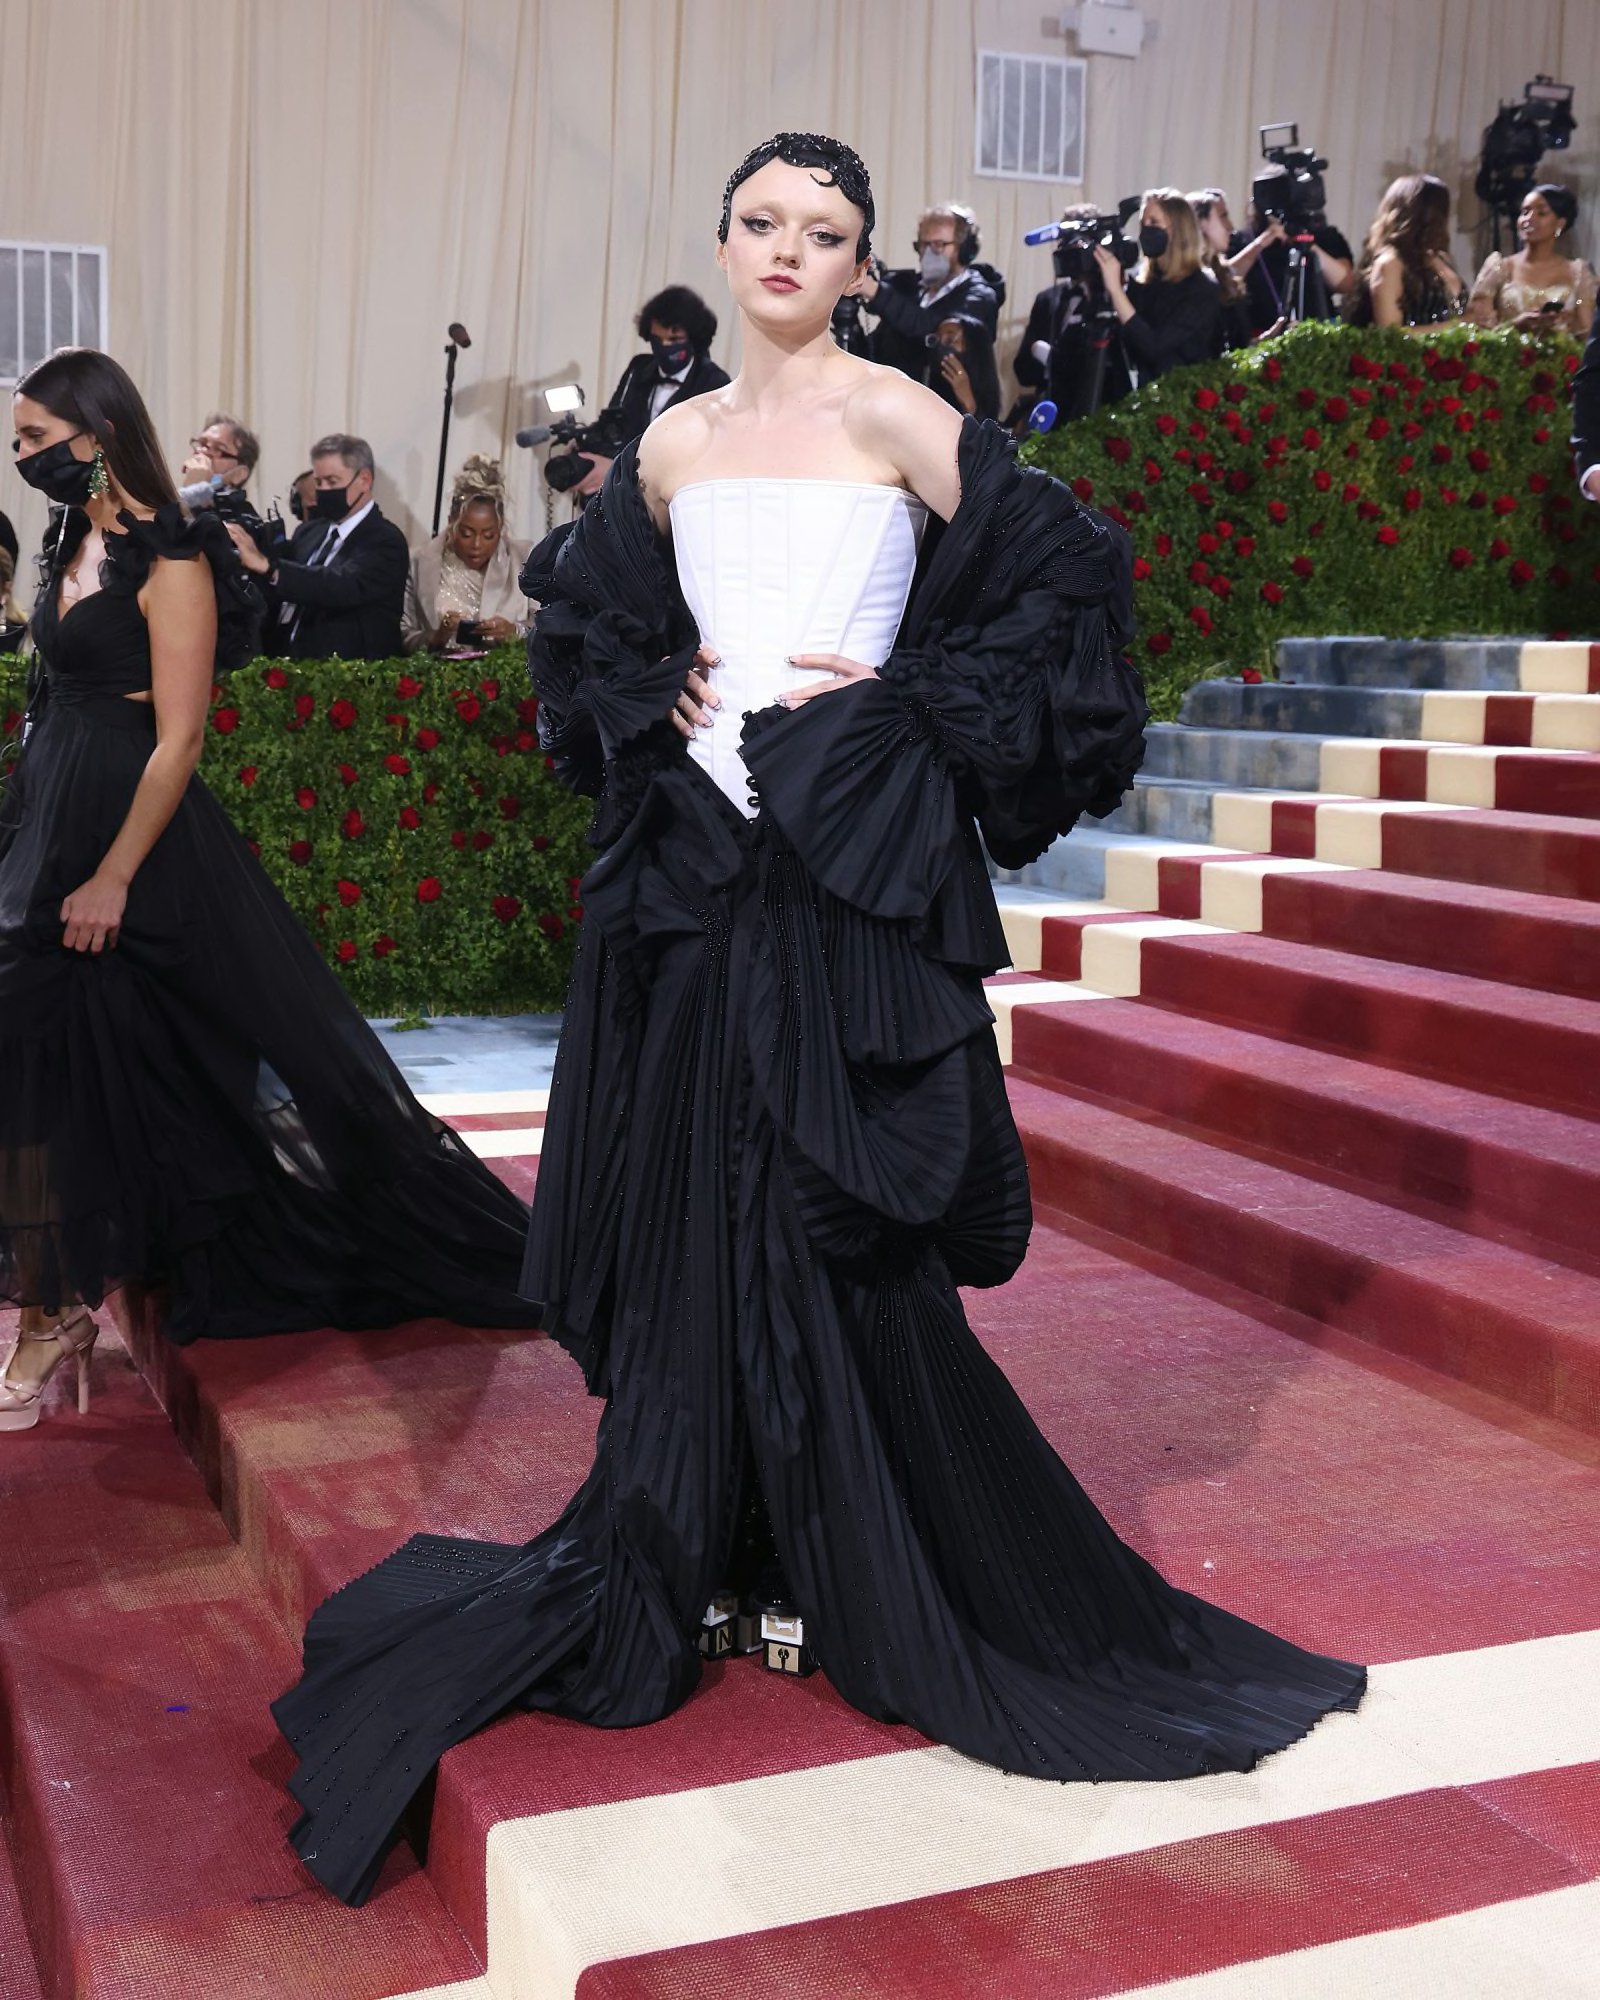 Sophie Turner Wears Black Maternity Dress With Joe Jonas at Met Gala 2022